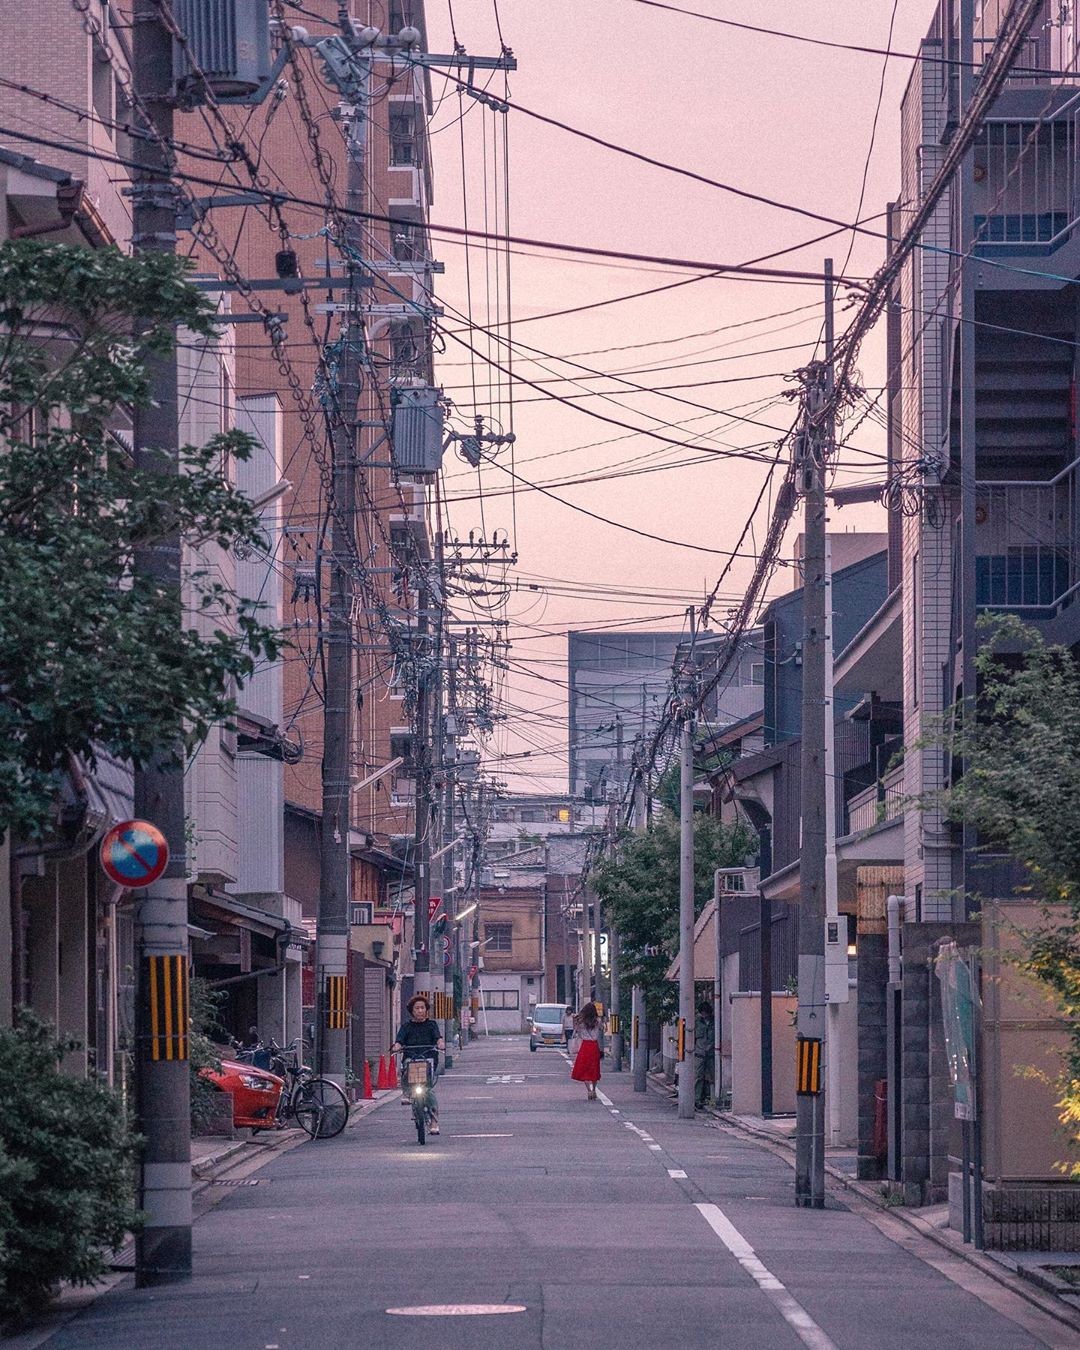 電線桿林立街頭才是道地的日常風景韓國攝影師pilsung眼中的日本風情 Ettoday生活新聞 Ettoday新聞雲